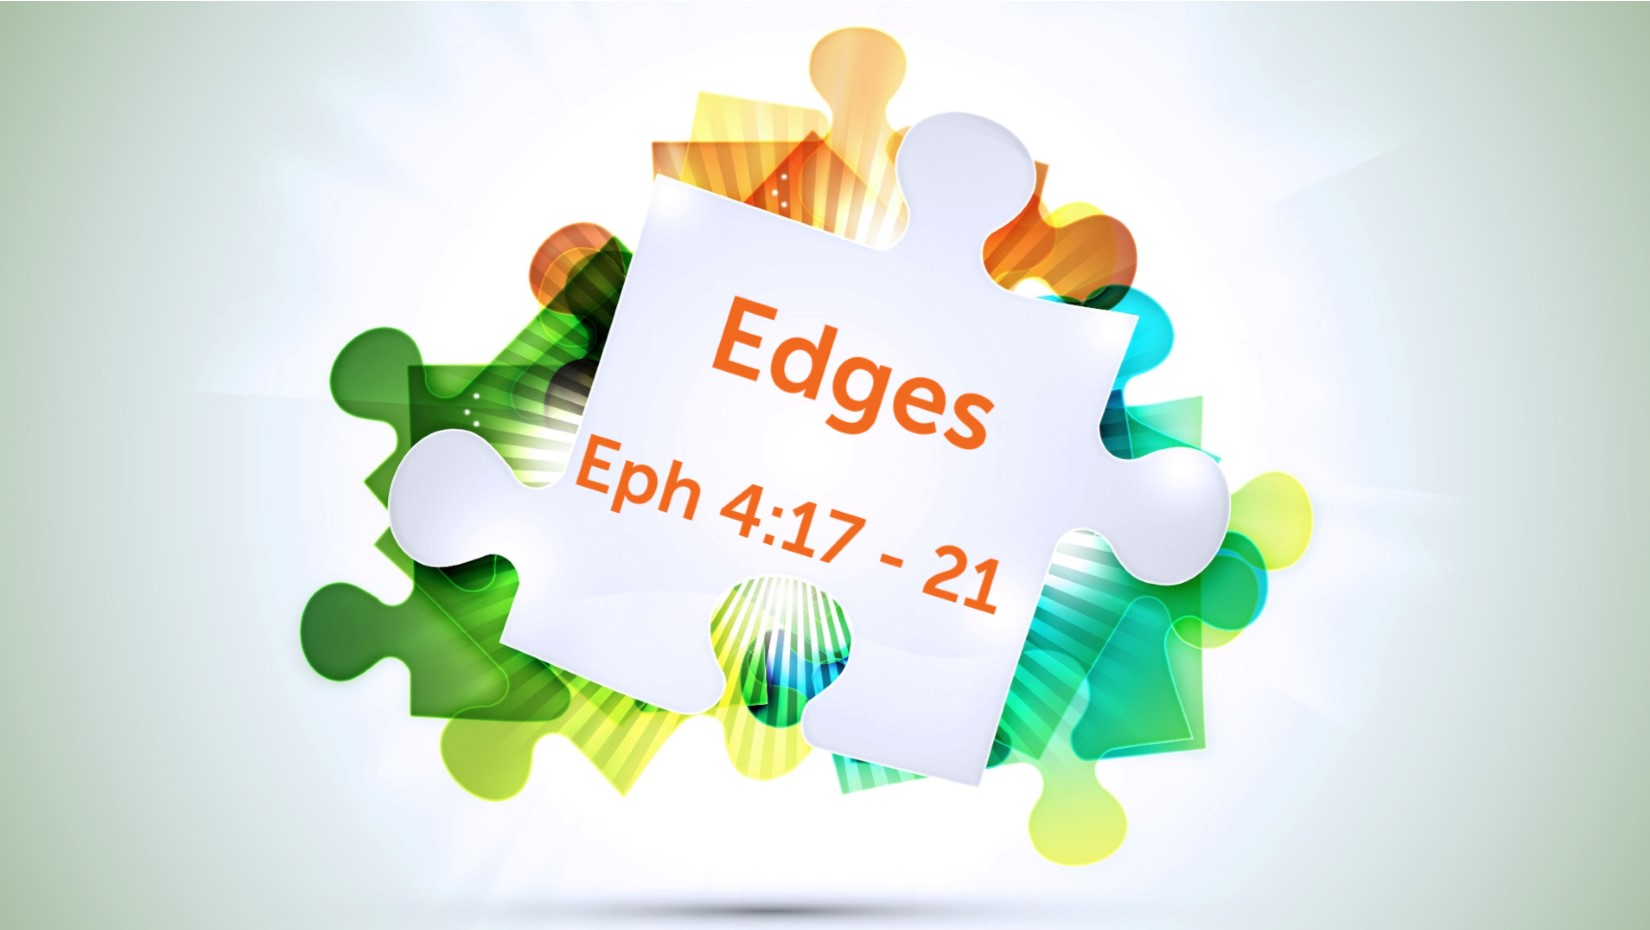 06.14.2020 Edges